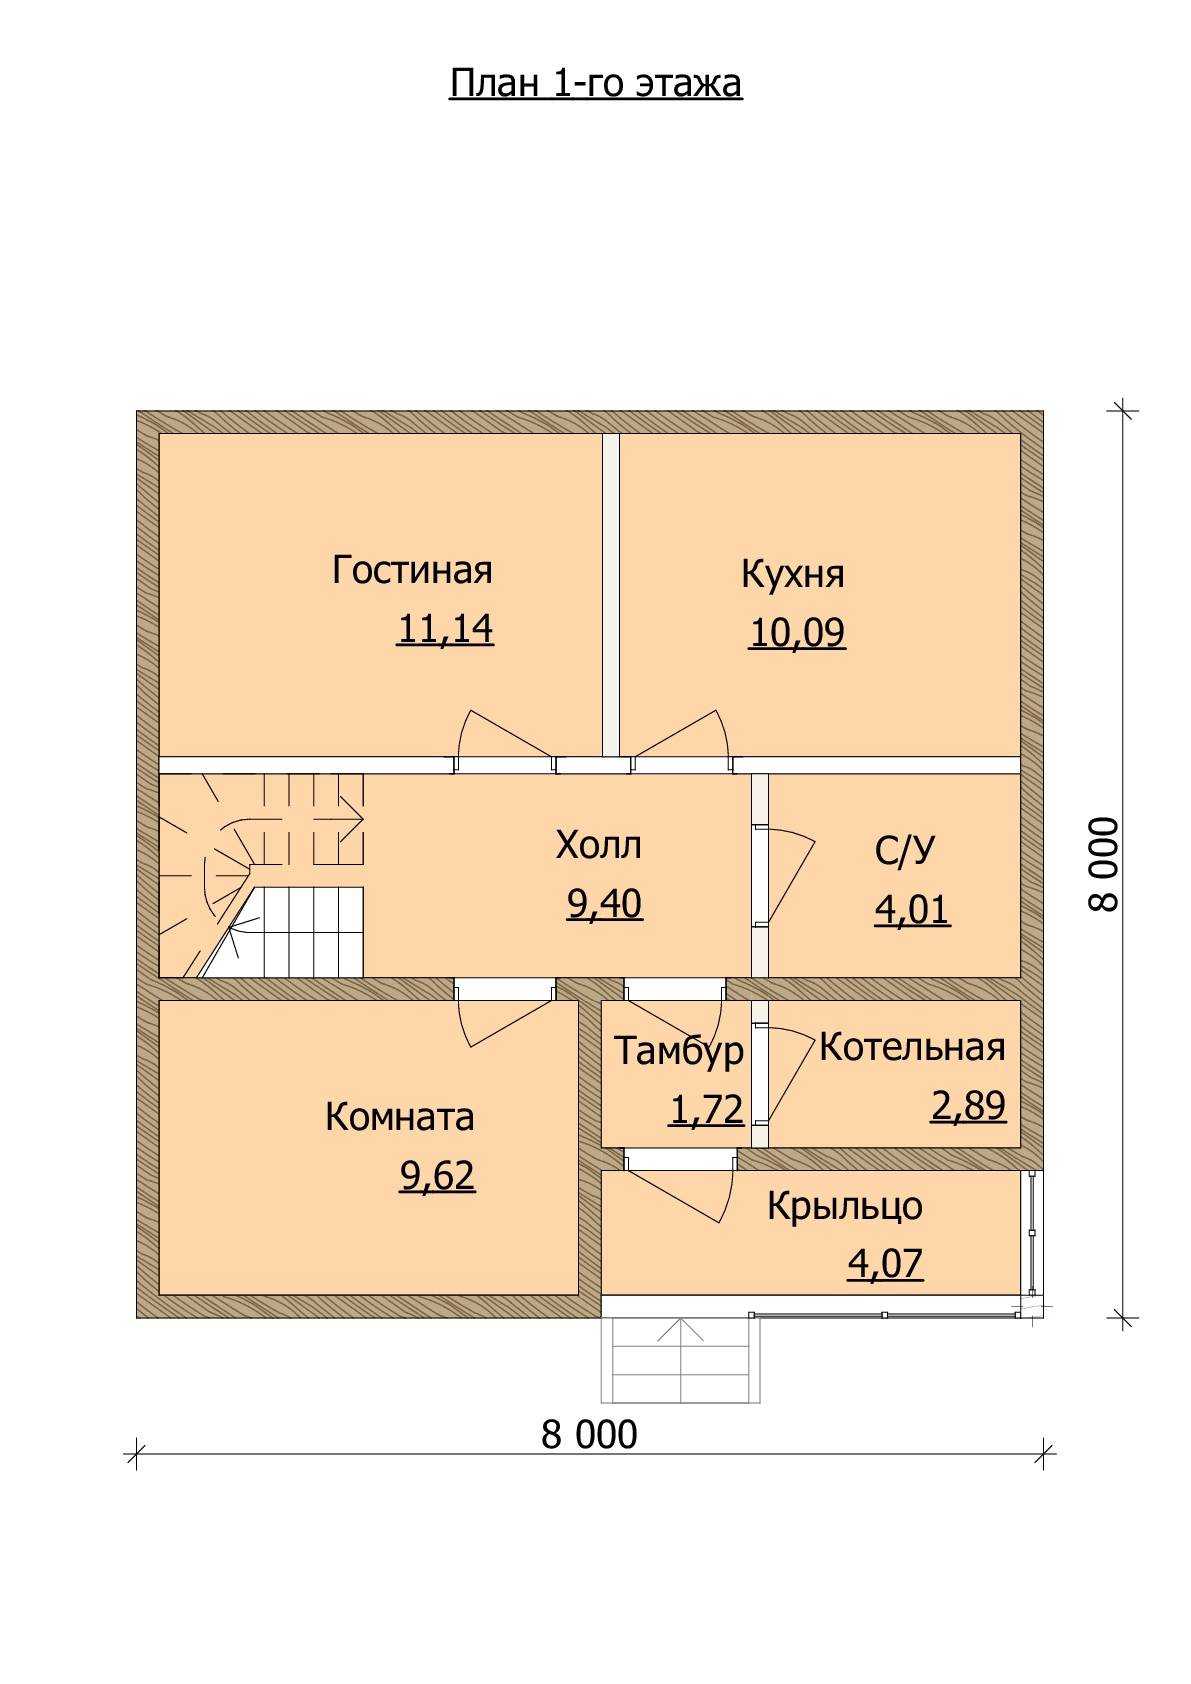 Планировка дома 8 на 8: двухэтажный коттедж и правила его создания популярные варианты планировок на основе бруса характеристика строительных материалов